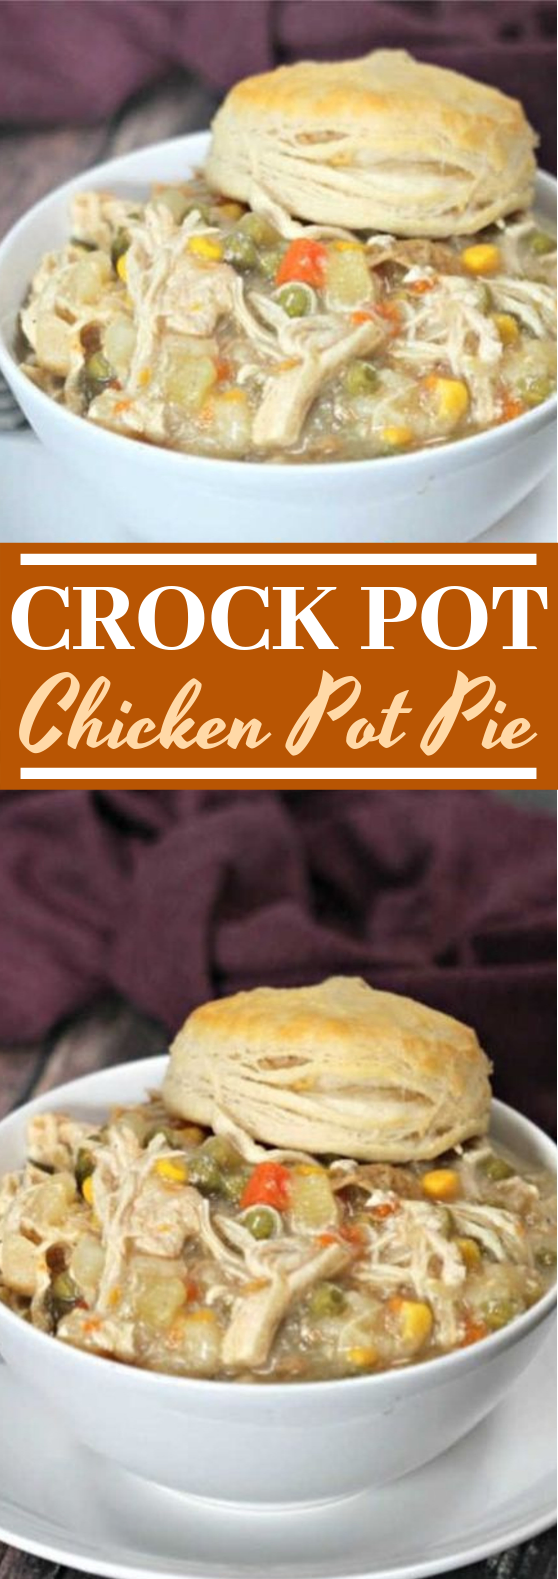 Crockpot Chicken Pot Pie #dinner #crockpot